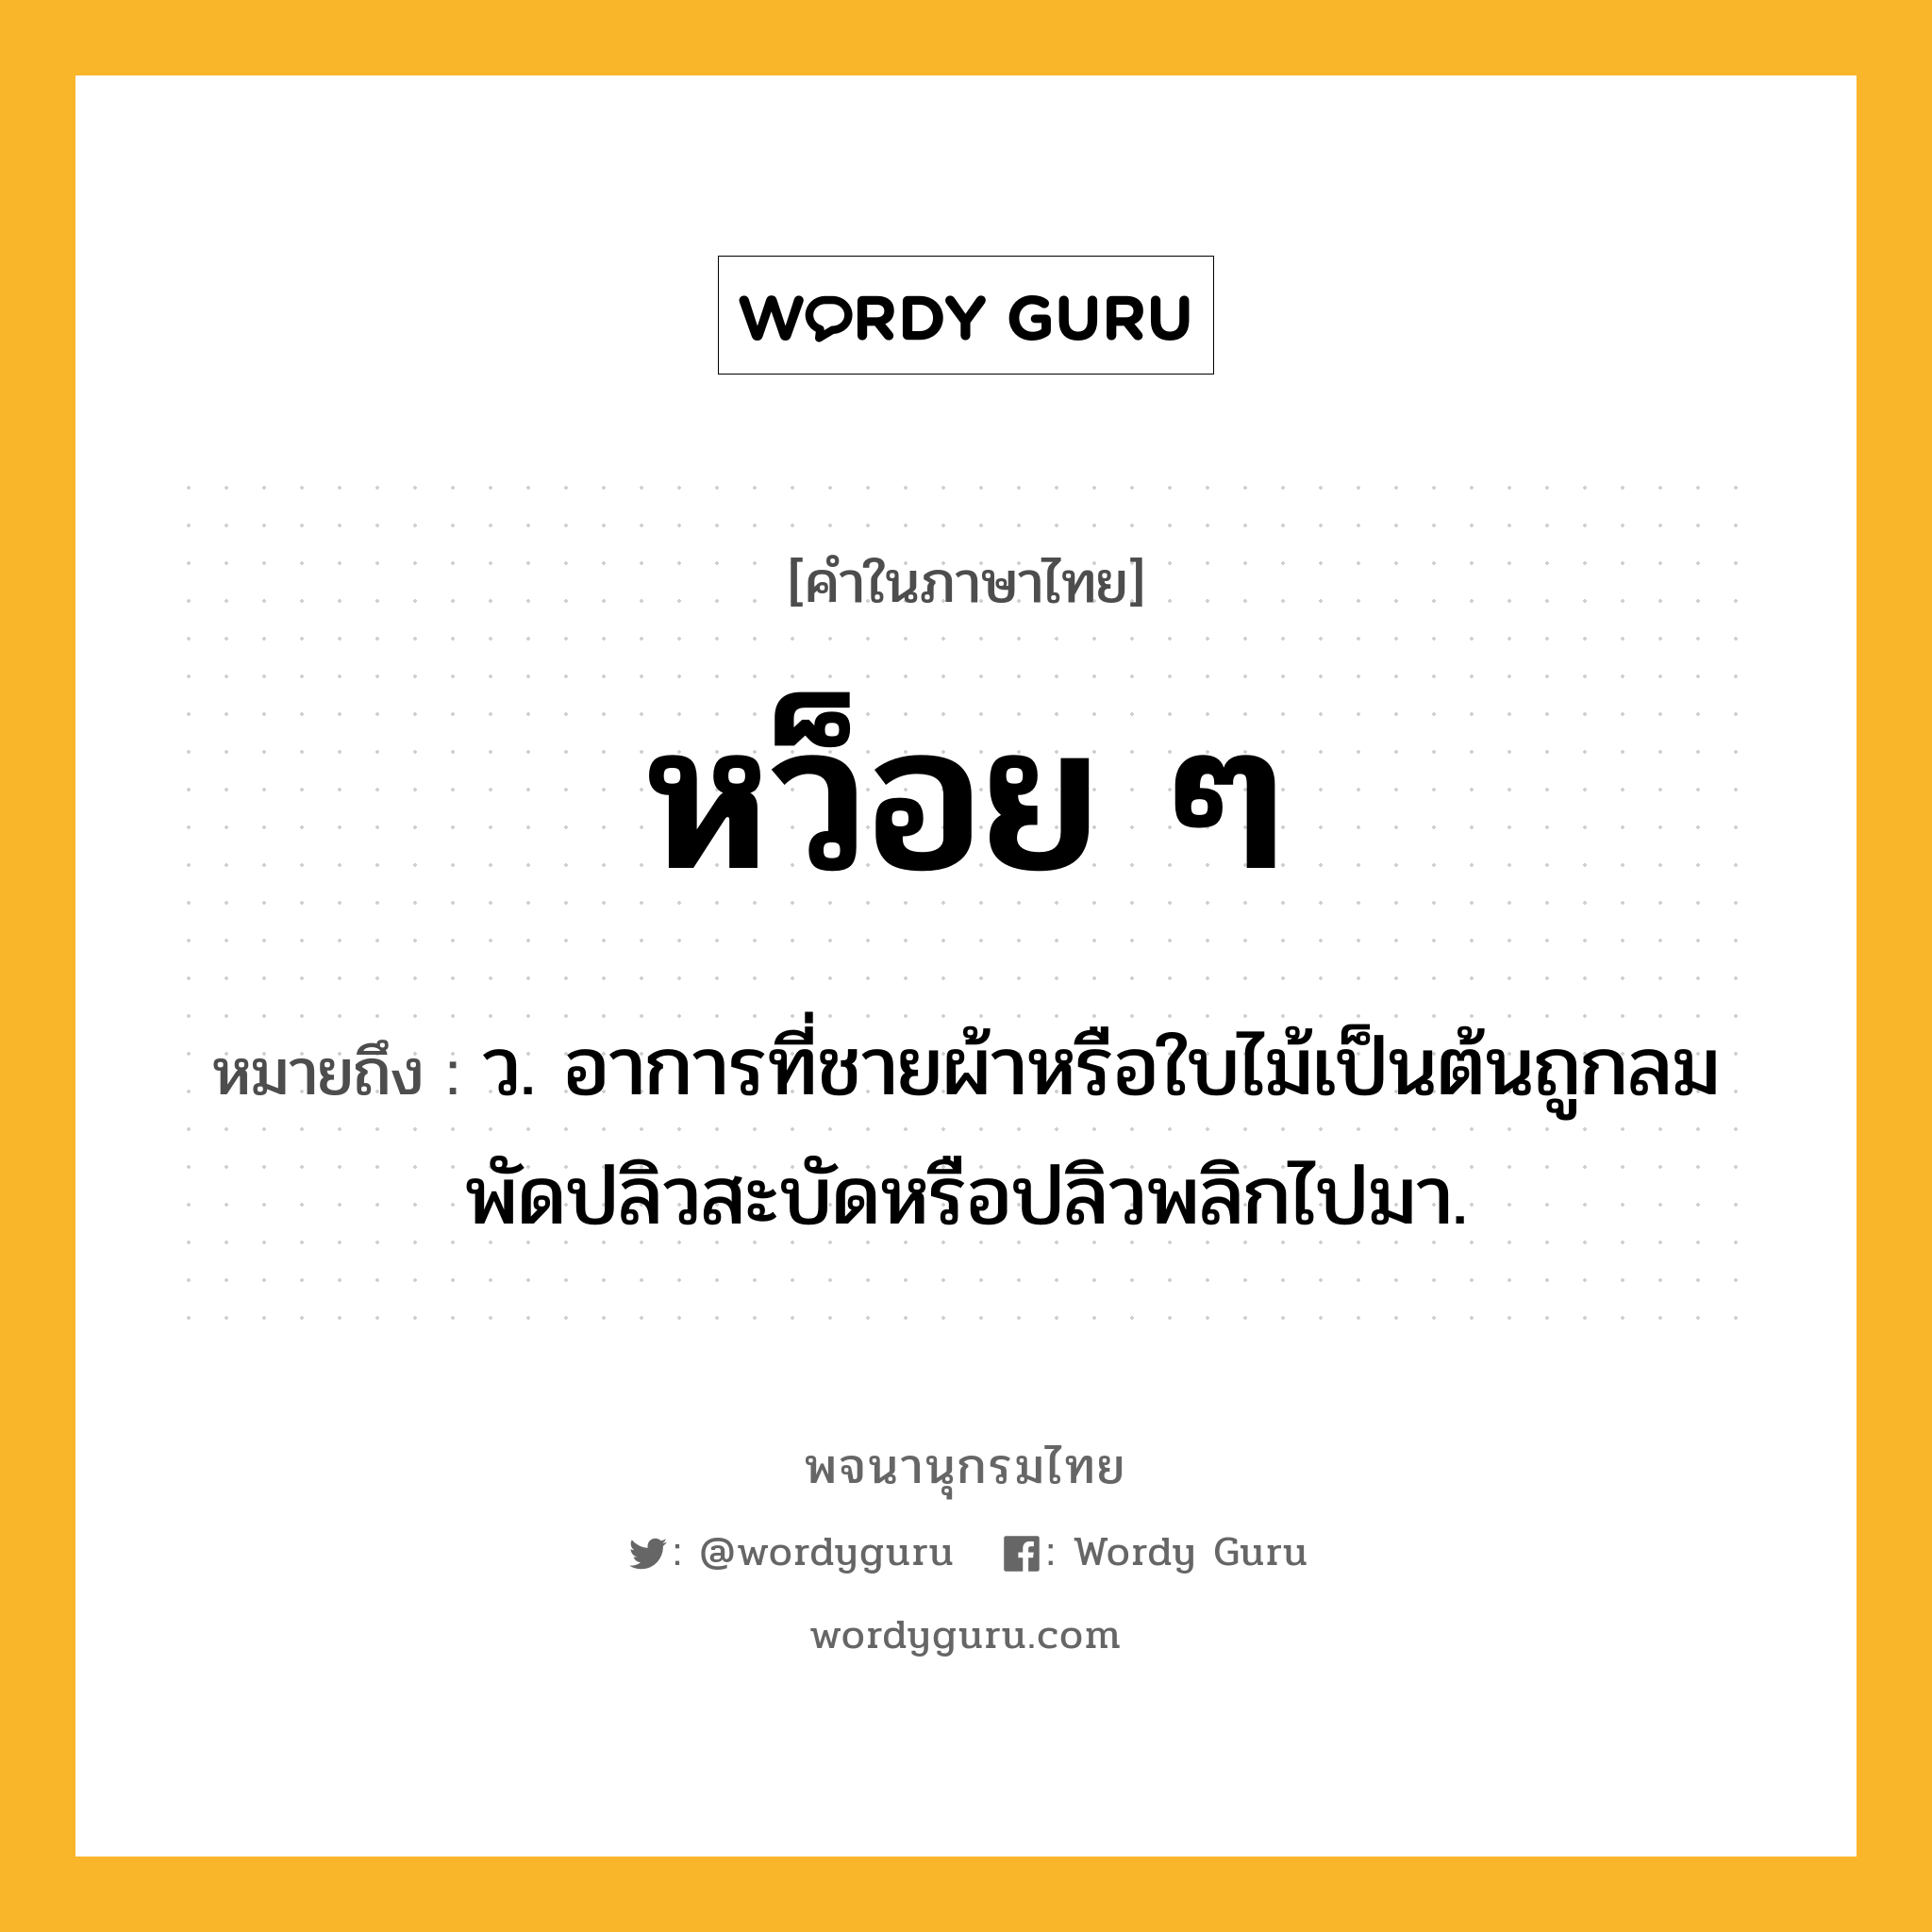 หว็อย ๆ ความหมาย หมายถึงอะไร?, คำในภาษาไทย หว็อย ๆ หมายถึง ว. อาการที่ชายผ้าหรือใบไม้เป็นต้นถูกลมพัดปลิวสะบัดหรือปลิวพลิกไปมา.